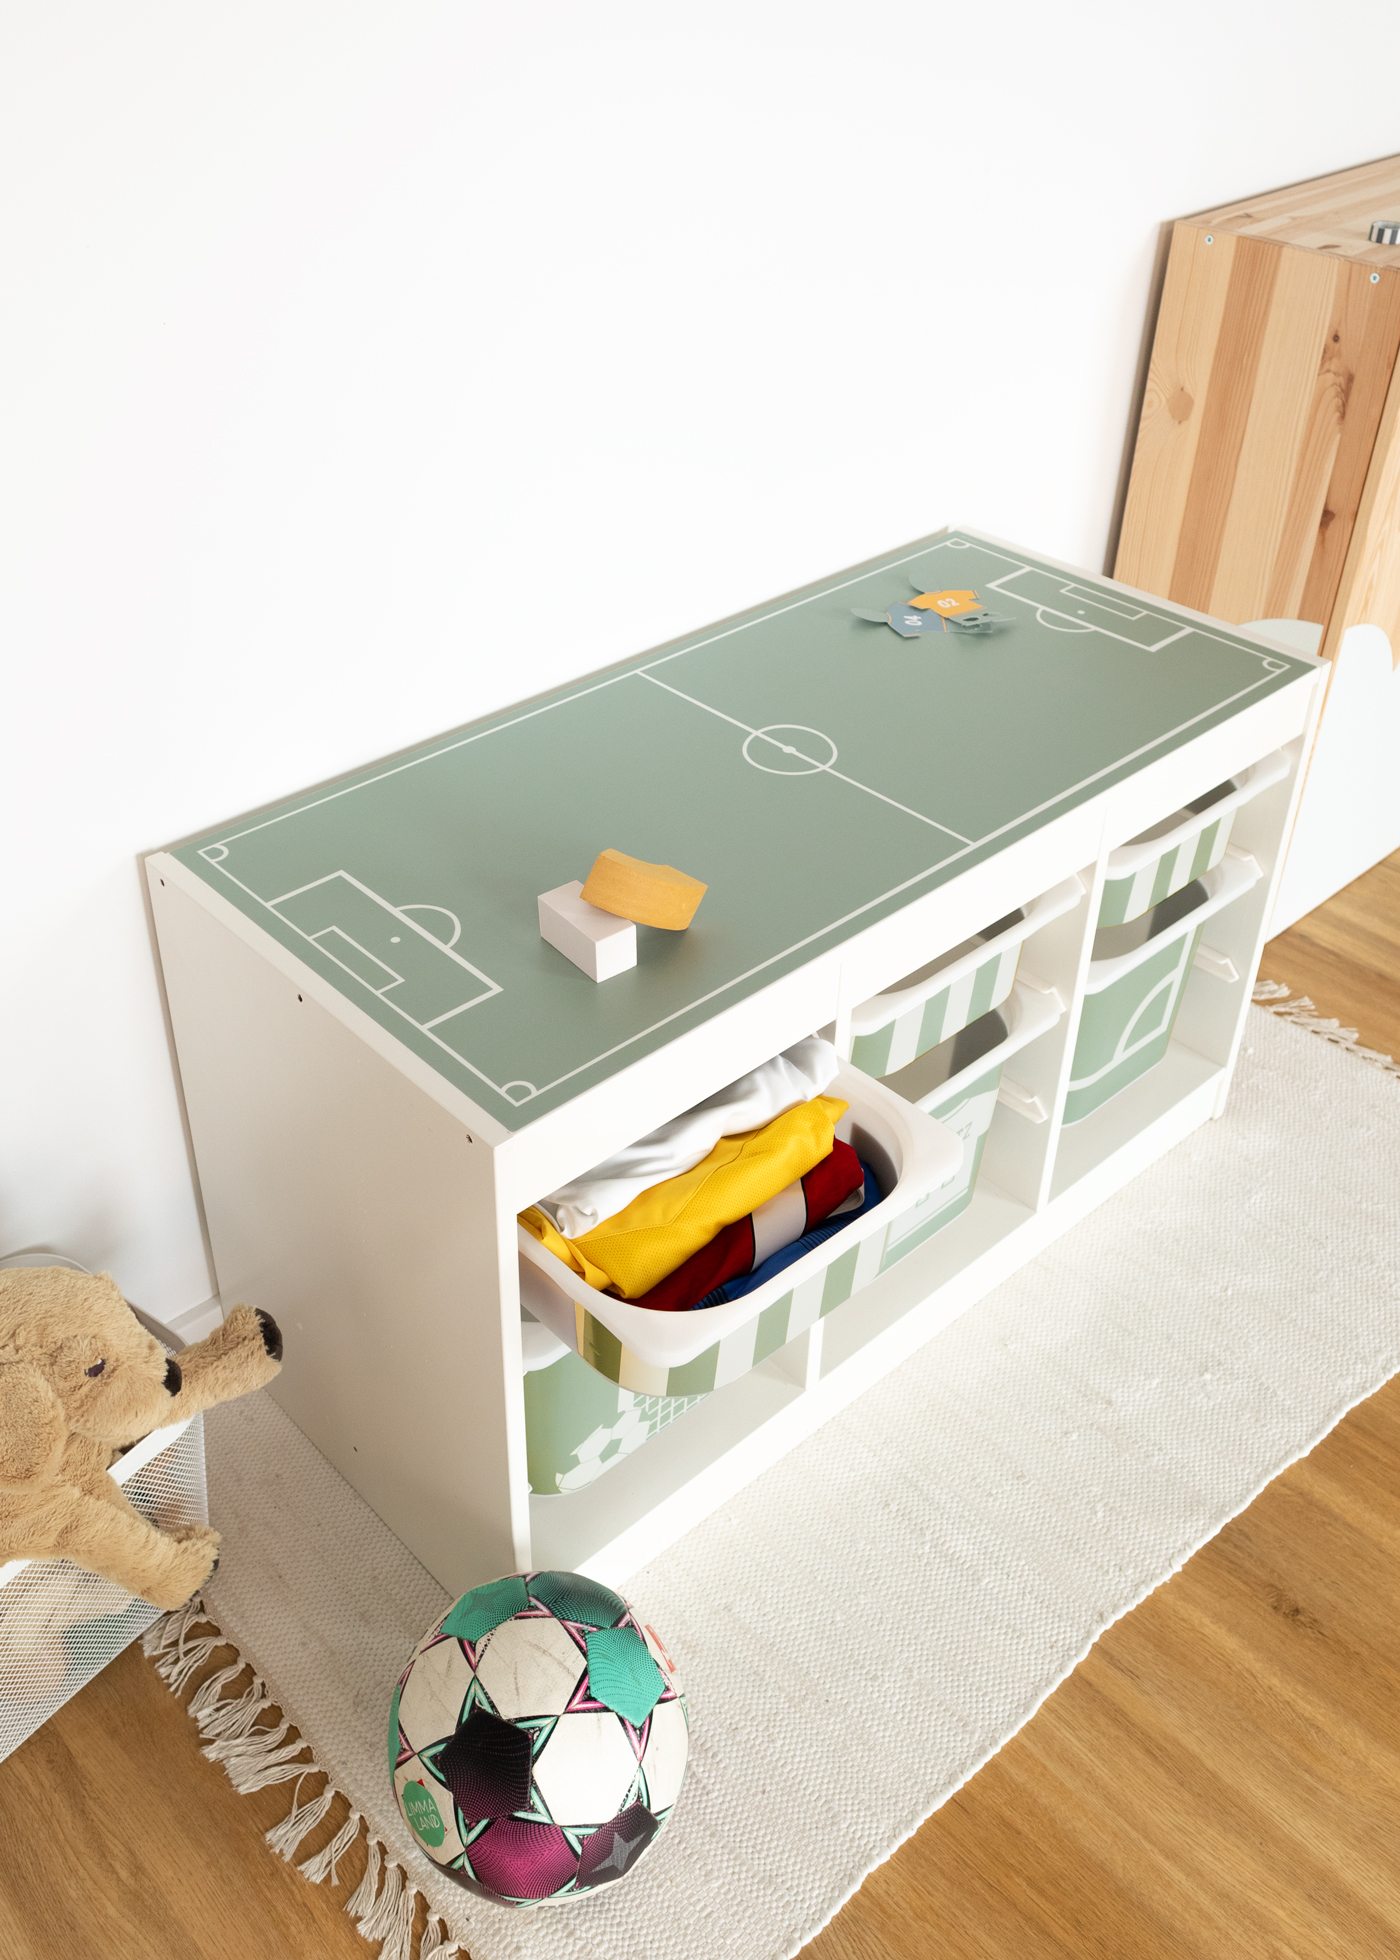 Ikea Trofast Klebefolie als Fußball Deko für dein Fußball Kinderzimmer als Fußballzimmer Deko mit Fußballmotiven passend für die Fußball EM